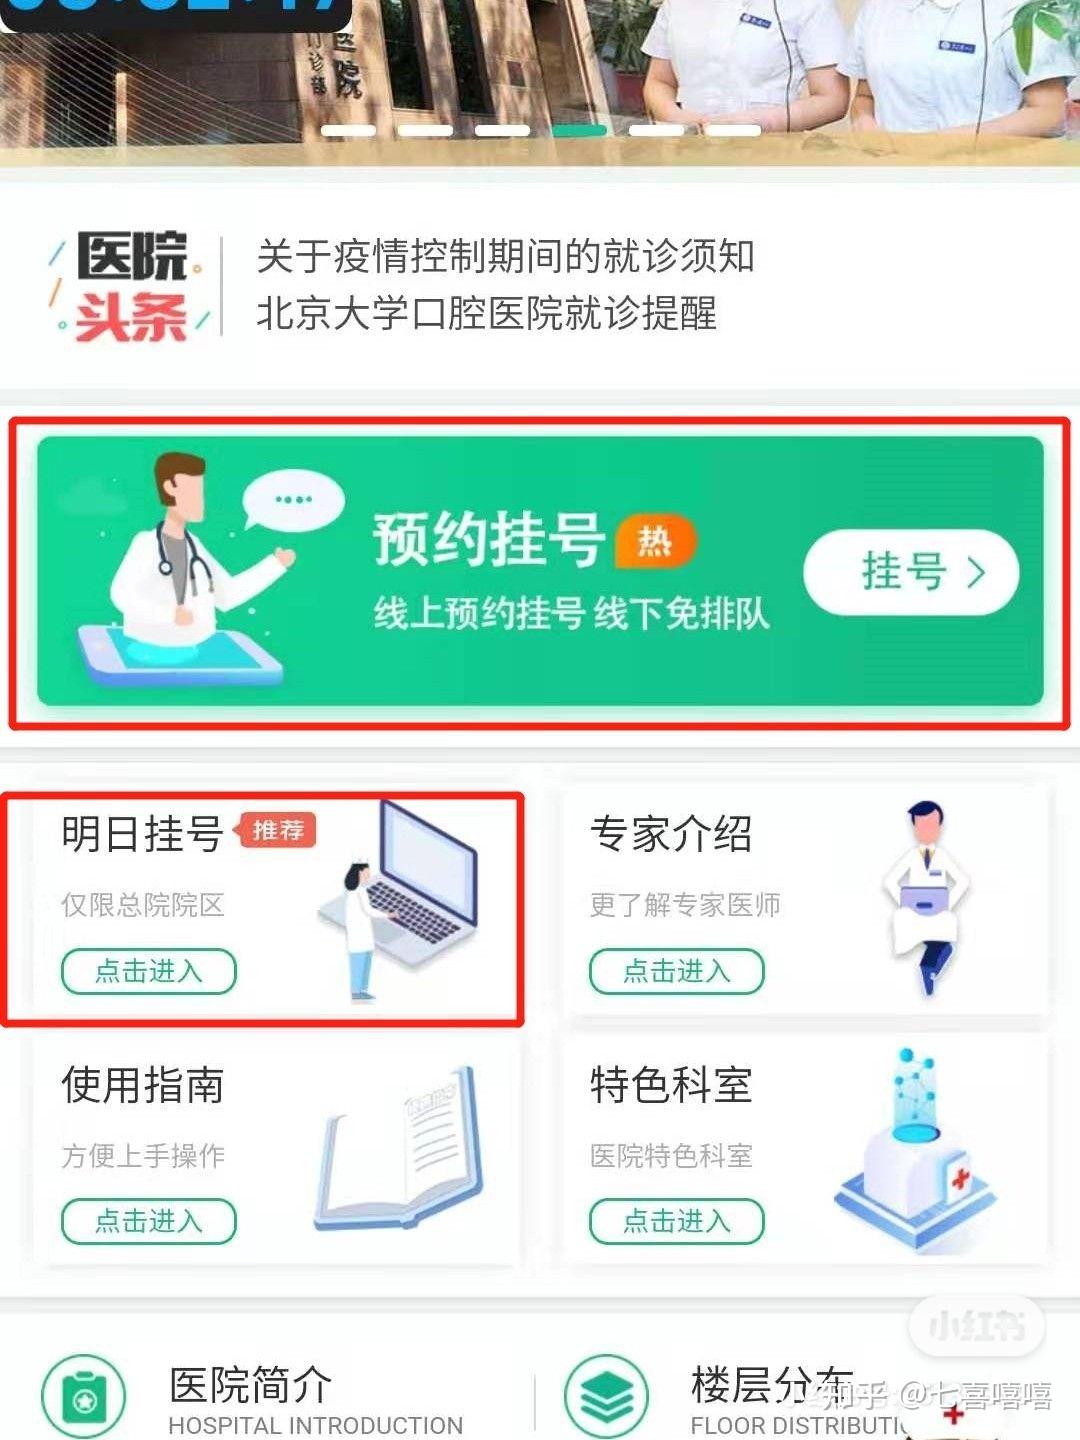 北京大学口腔医院贩子挂号,确实能挂到号!的简单介绍